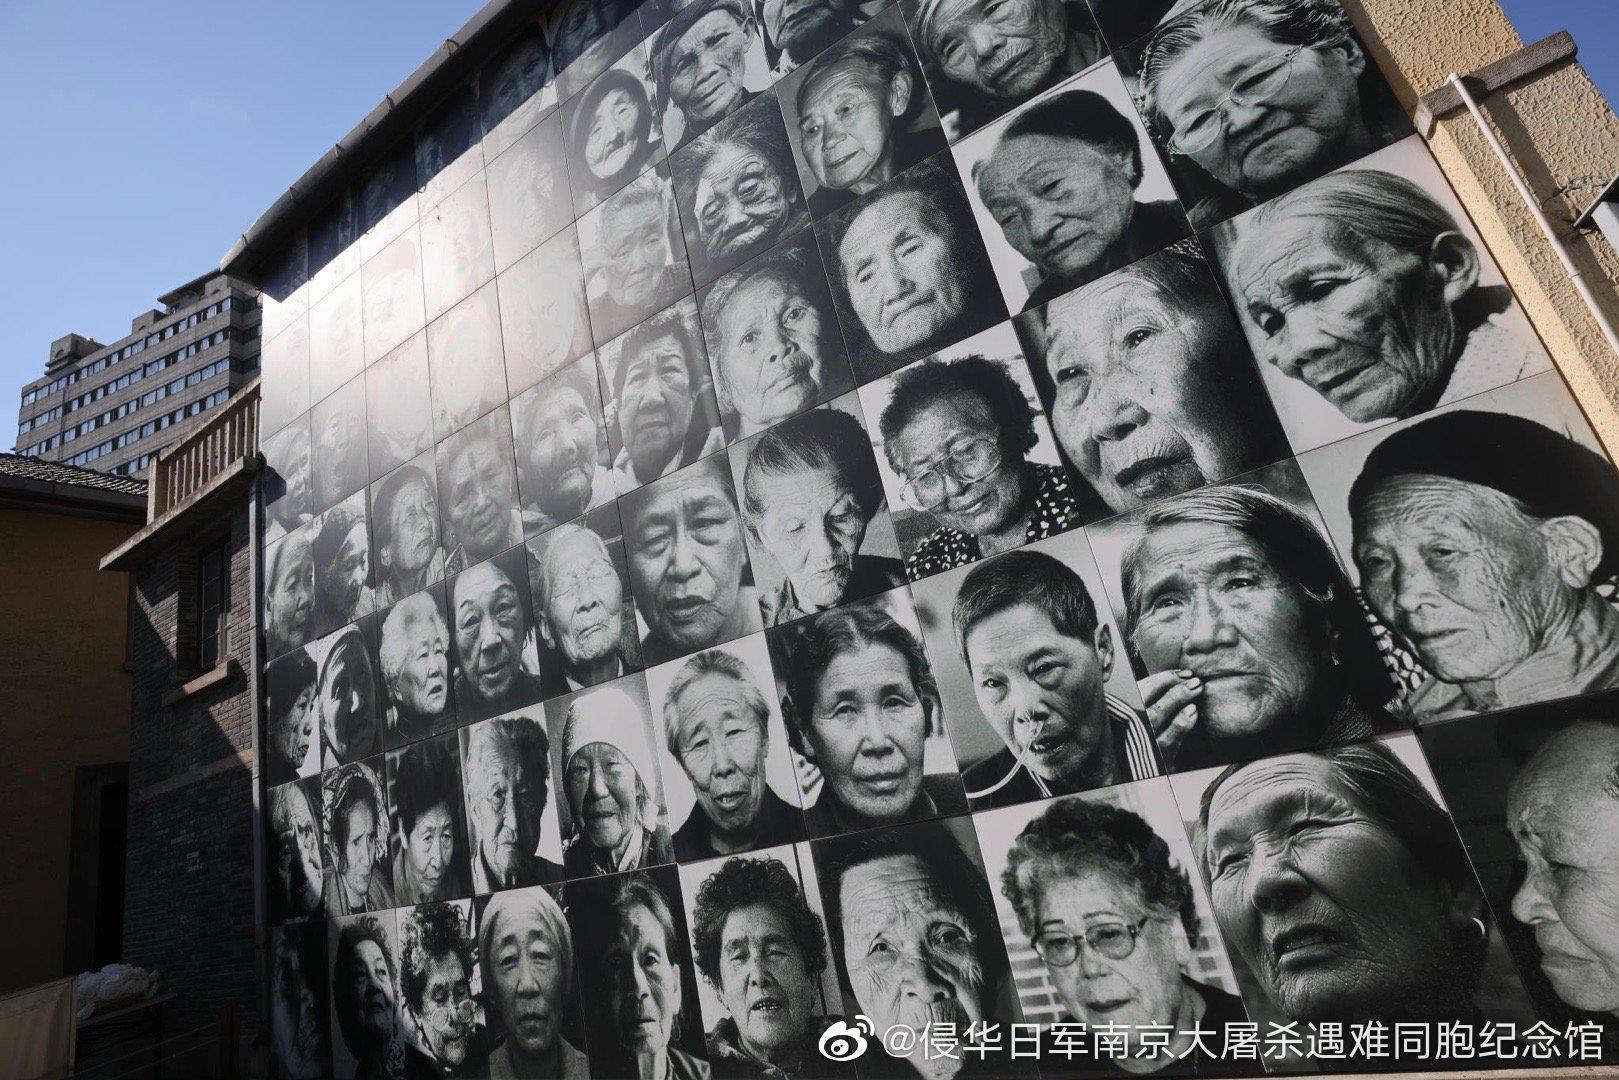 韩国多地举行日军“慰安妇”受害者纪念日活动_央广网